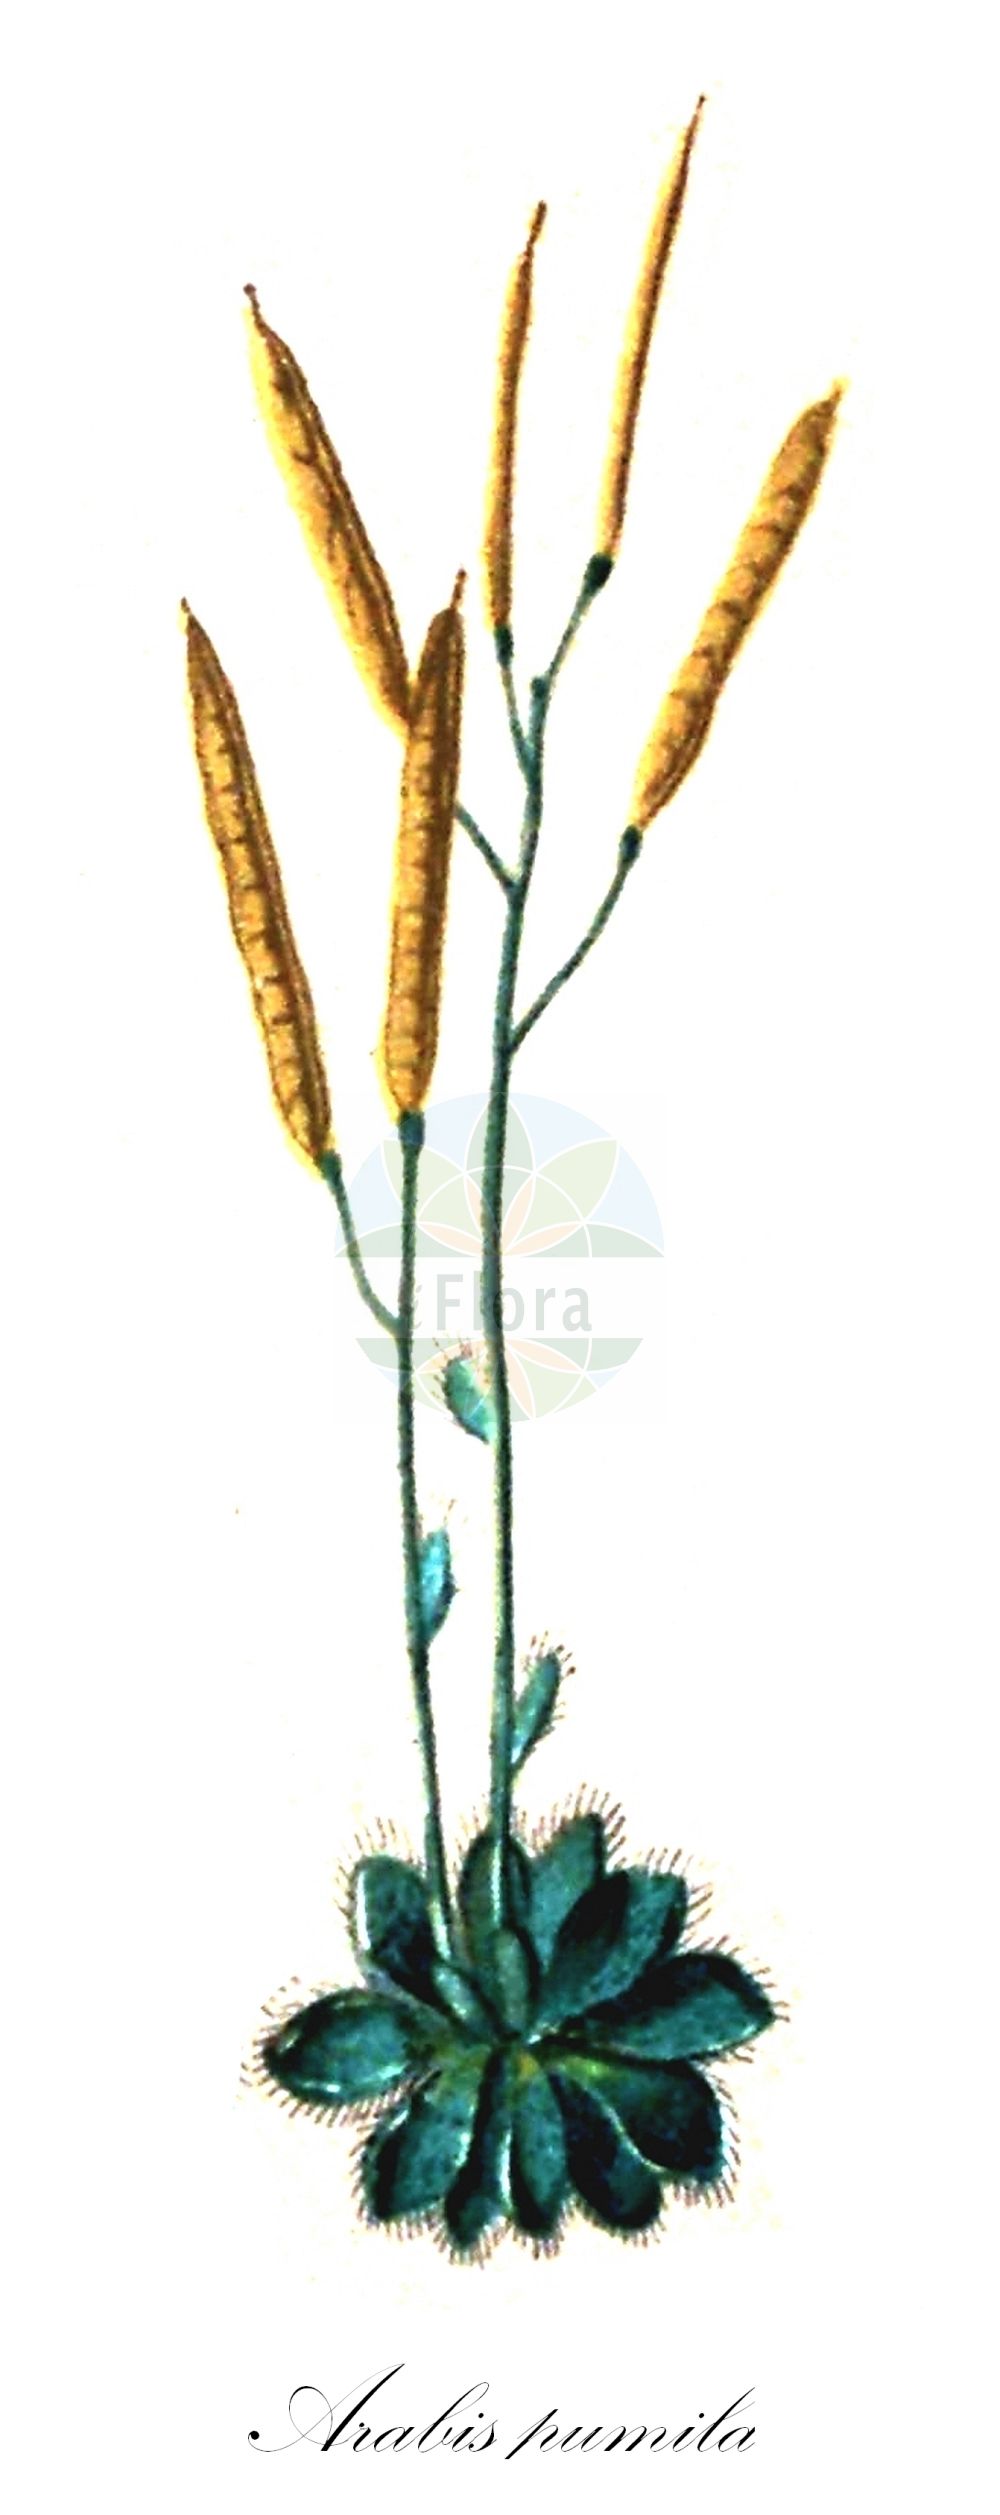 Historische Abbildung von Arabis pumila (Zwerg-Gänsekresse - Dwarf Rockcress). Das Bild zeigt Blatt, Bluete, Frucht und Same. ---- Historical Drawing of Arabis pumila (Zwerg-Gänsekresse - Dwarf Rockcress). The image is showing leaf, flower, fruit and seed.(Arabis pumila,Zwerg-Gänsekresse,Dwarf Rockcress,Arabis bellidifolia,Arabis bellidifolia Crantz subsp.,Arabis pumila,Arabis pumila Jacq. subsp.,Zwerg-Gaensekresse,Gewoehnliche Zwerg-Gaensekresse,Sternhaarige Zwerg-Gaensekresse,Dwarf Rockcress,Arabis,Gänsekresse,Rockcress,Brassicaceae,Kreuzblütler,Cabbage family,Blatt,Bluete,Frucht,Same,leaf,flower,fruit,seed,Seboth & Graf (1879-1884))